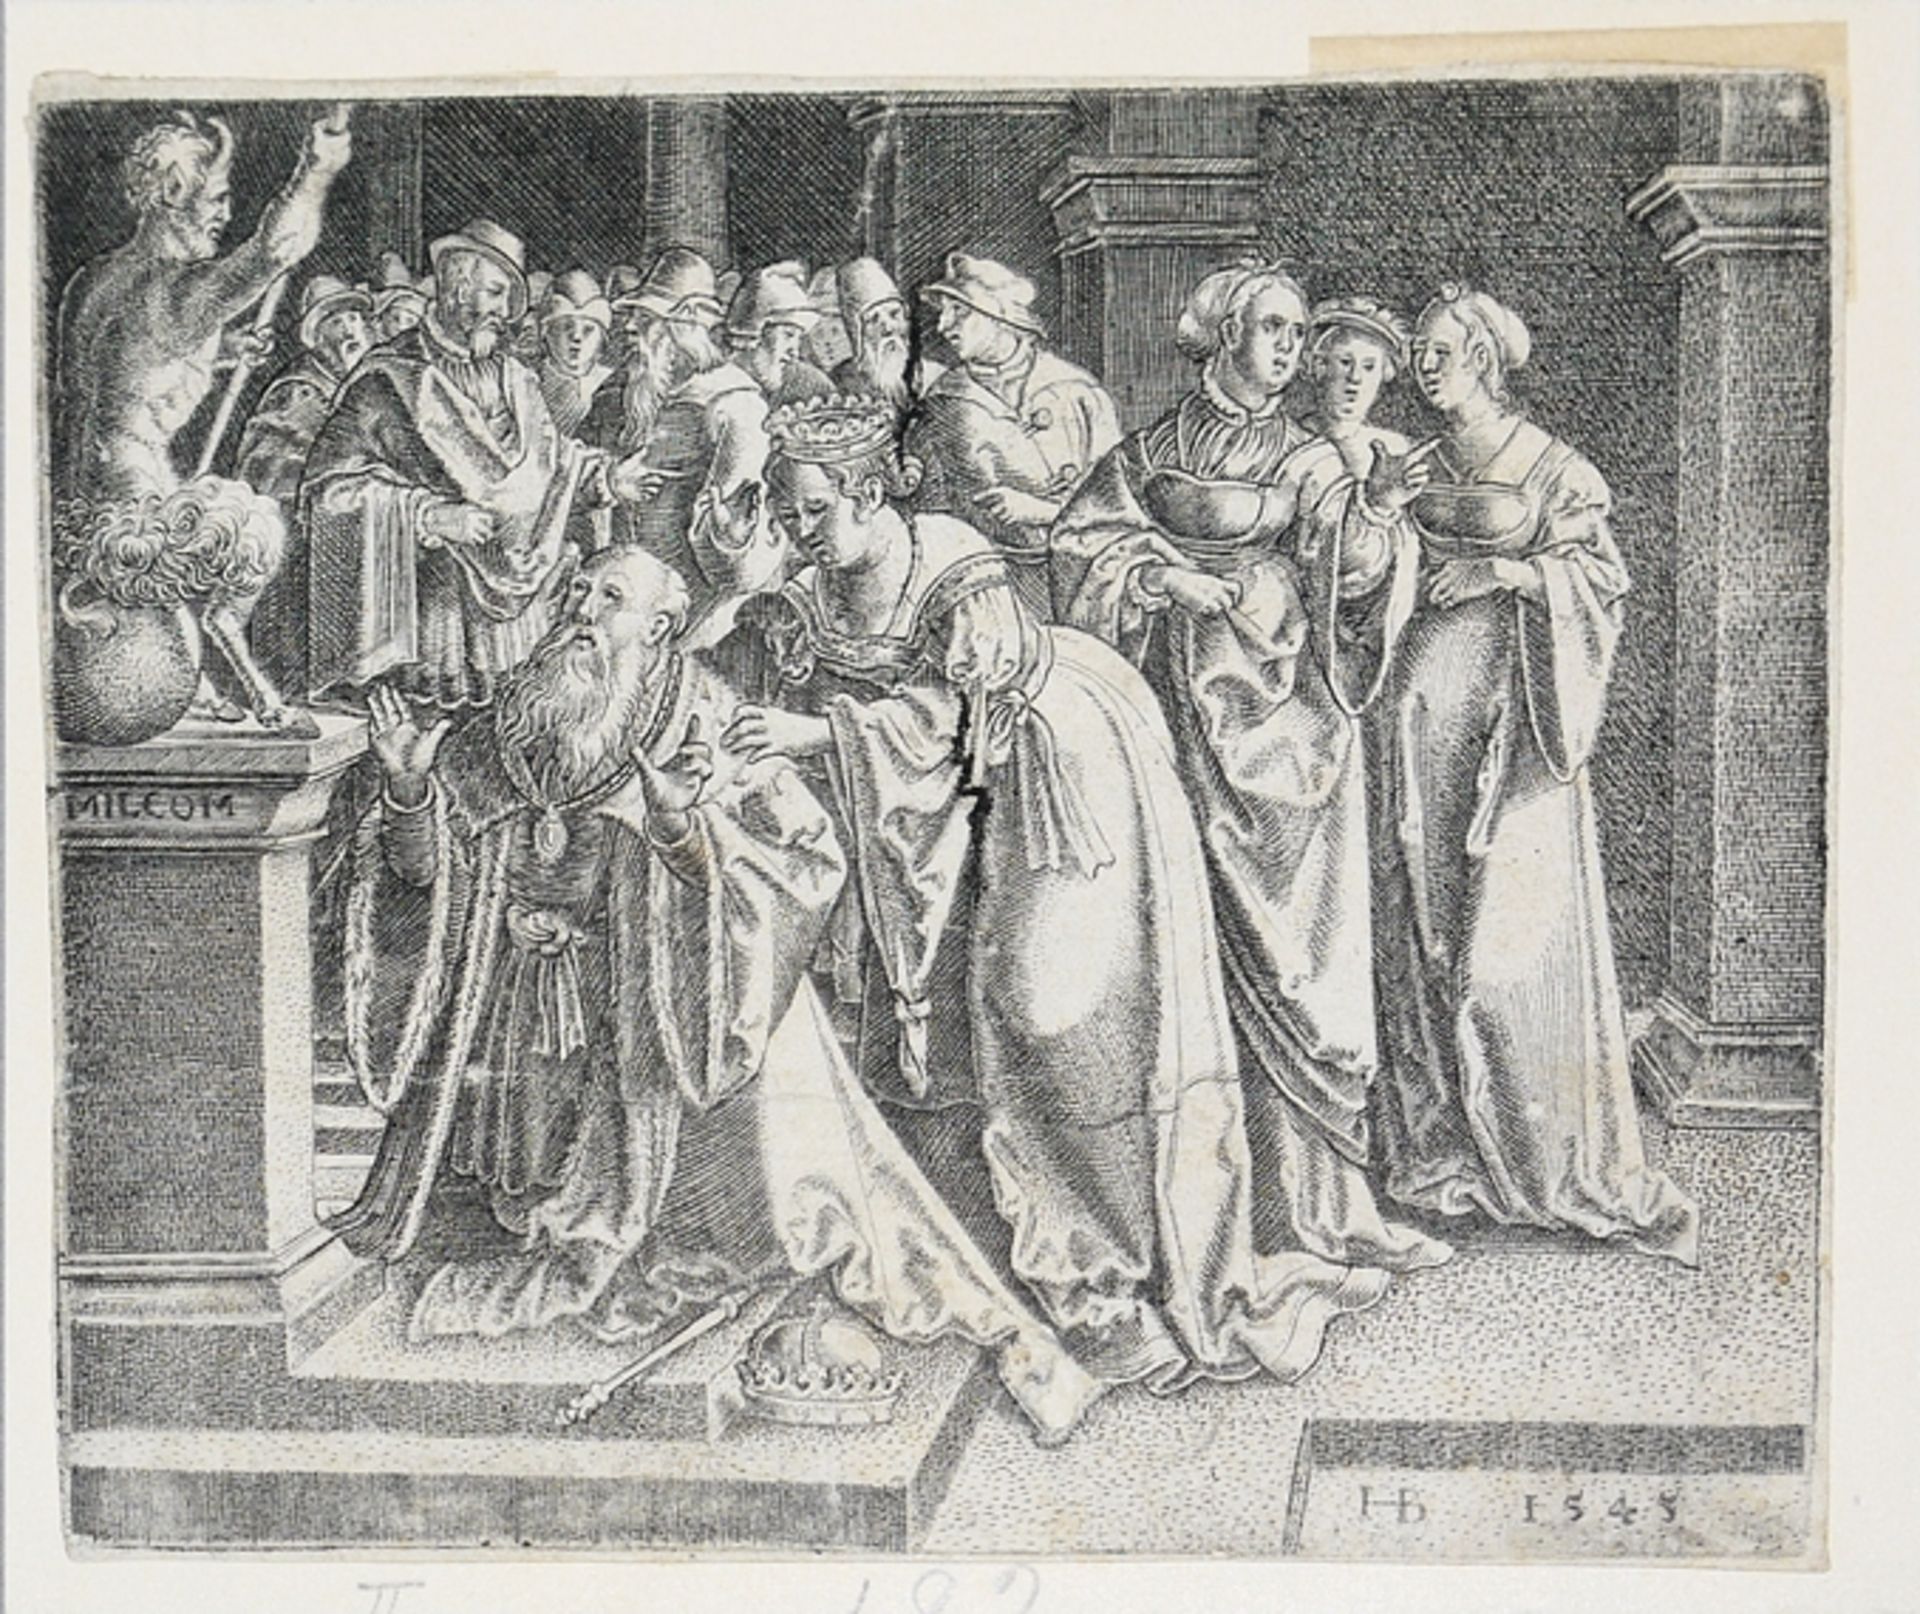 Hans Brosamer, "Salomons Götzendienst", Kupferstich von 1545